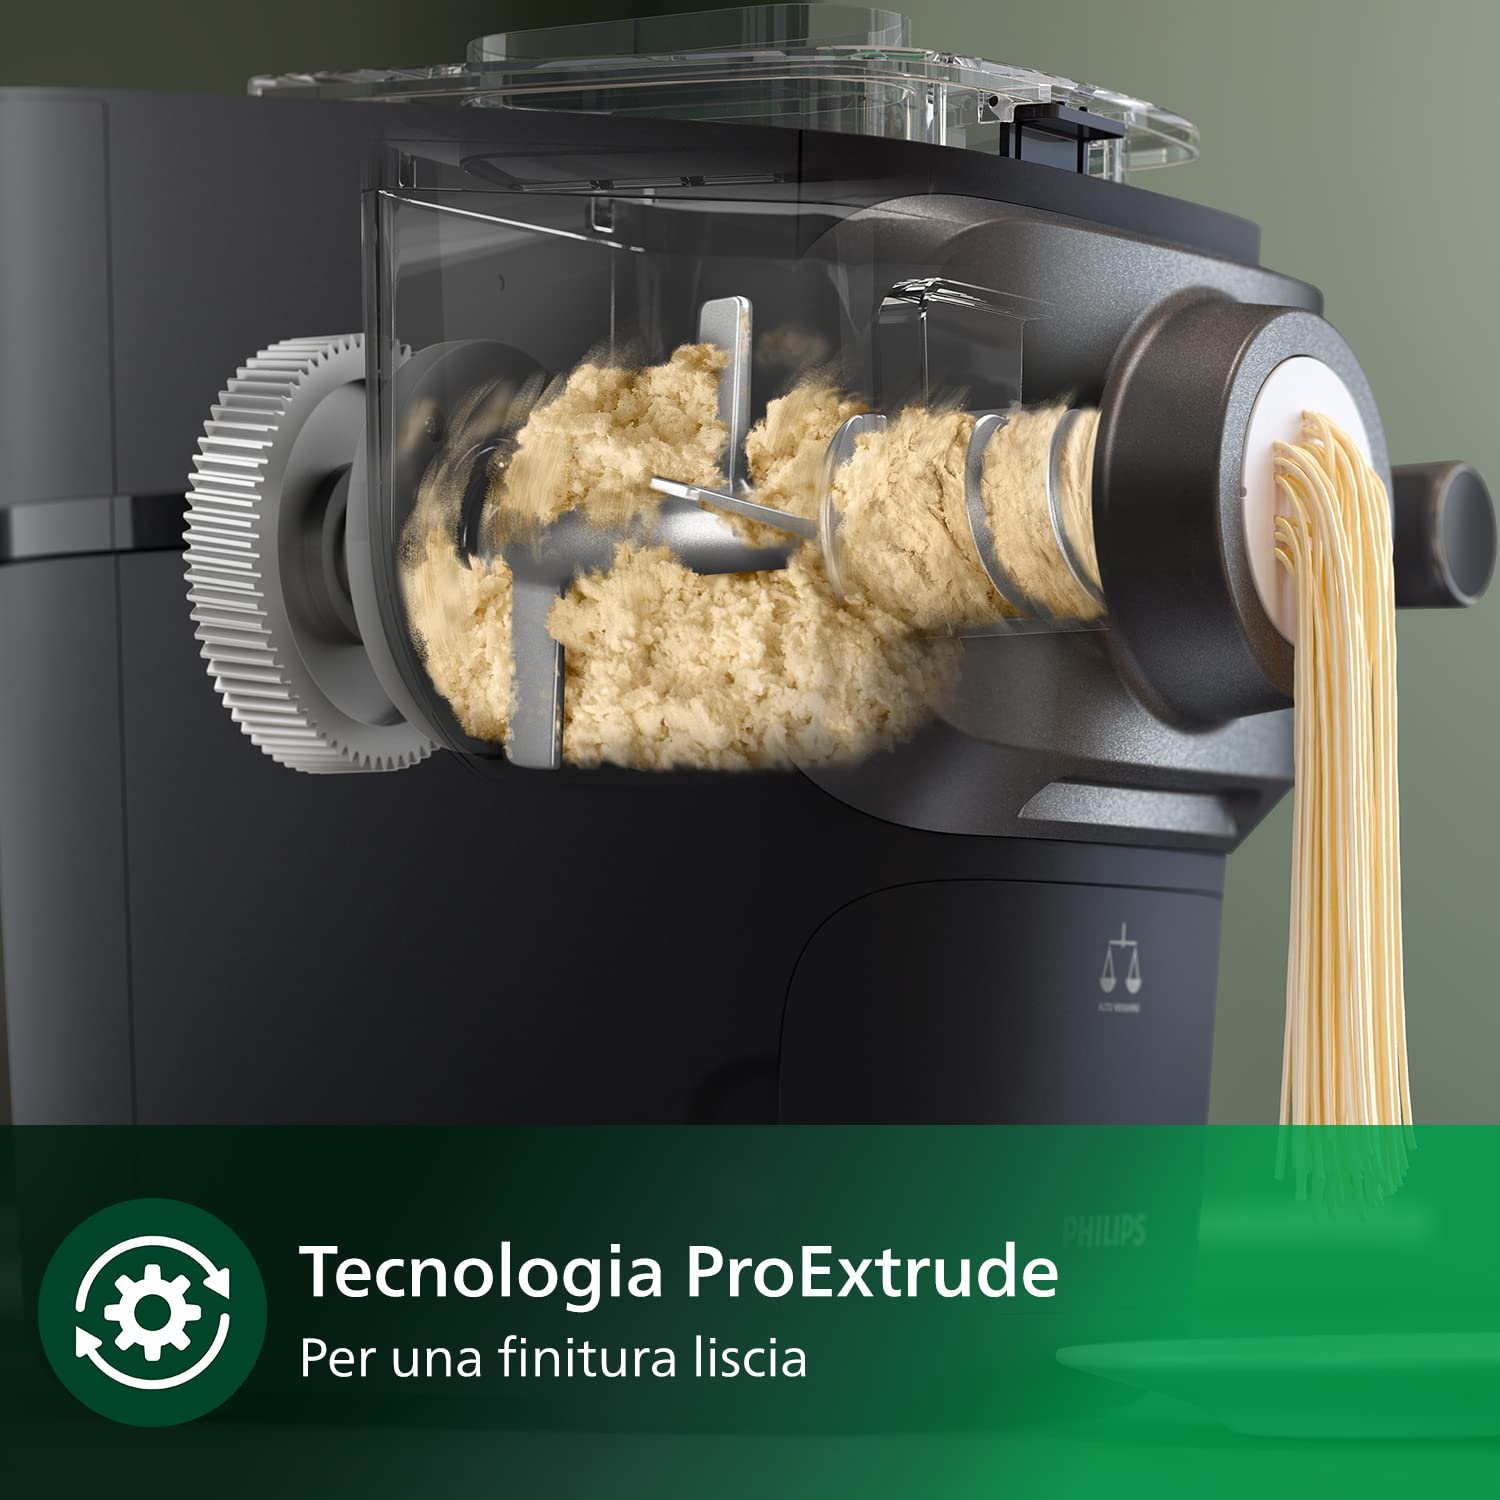 Philips Macchina Per La Pasta Serie 7000 - Tecnologia ProExtrude, Bilancia Integrata